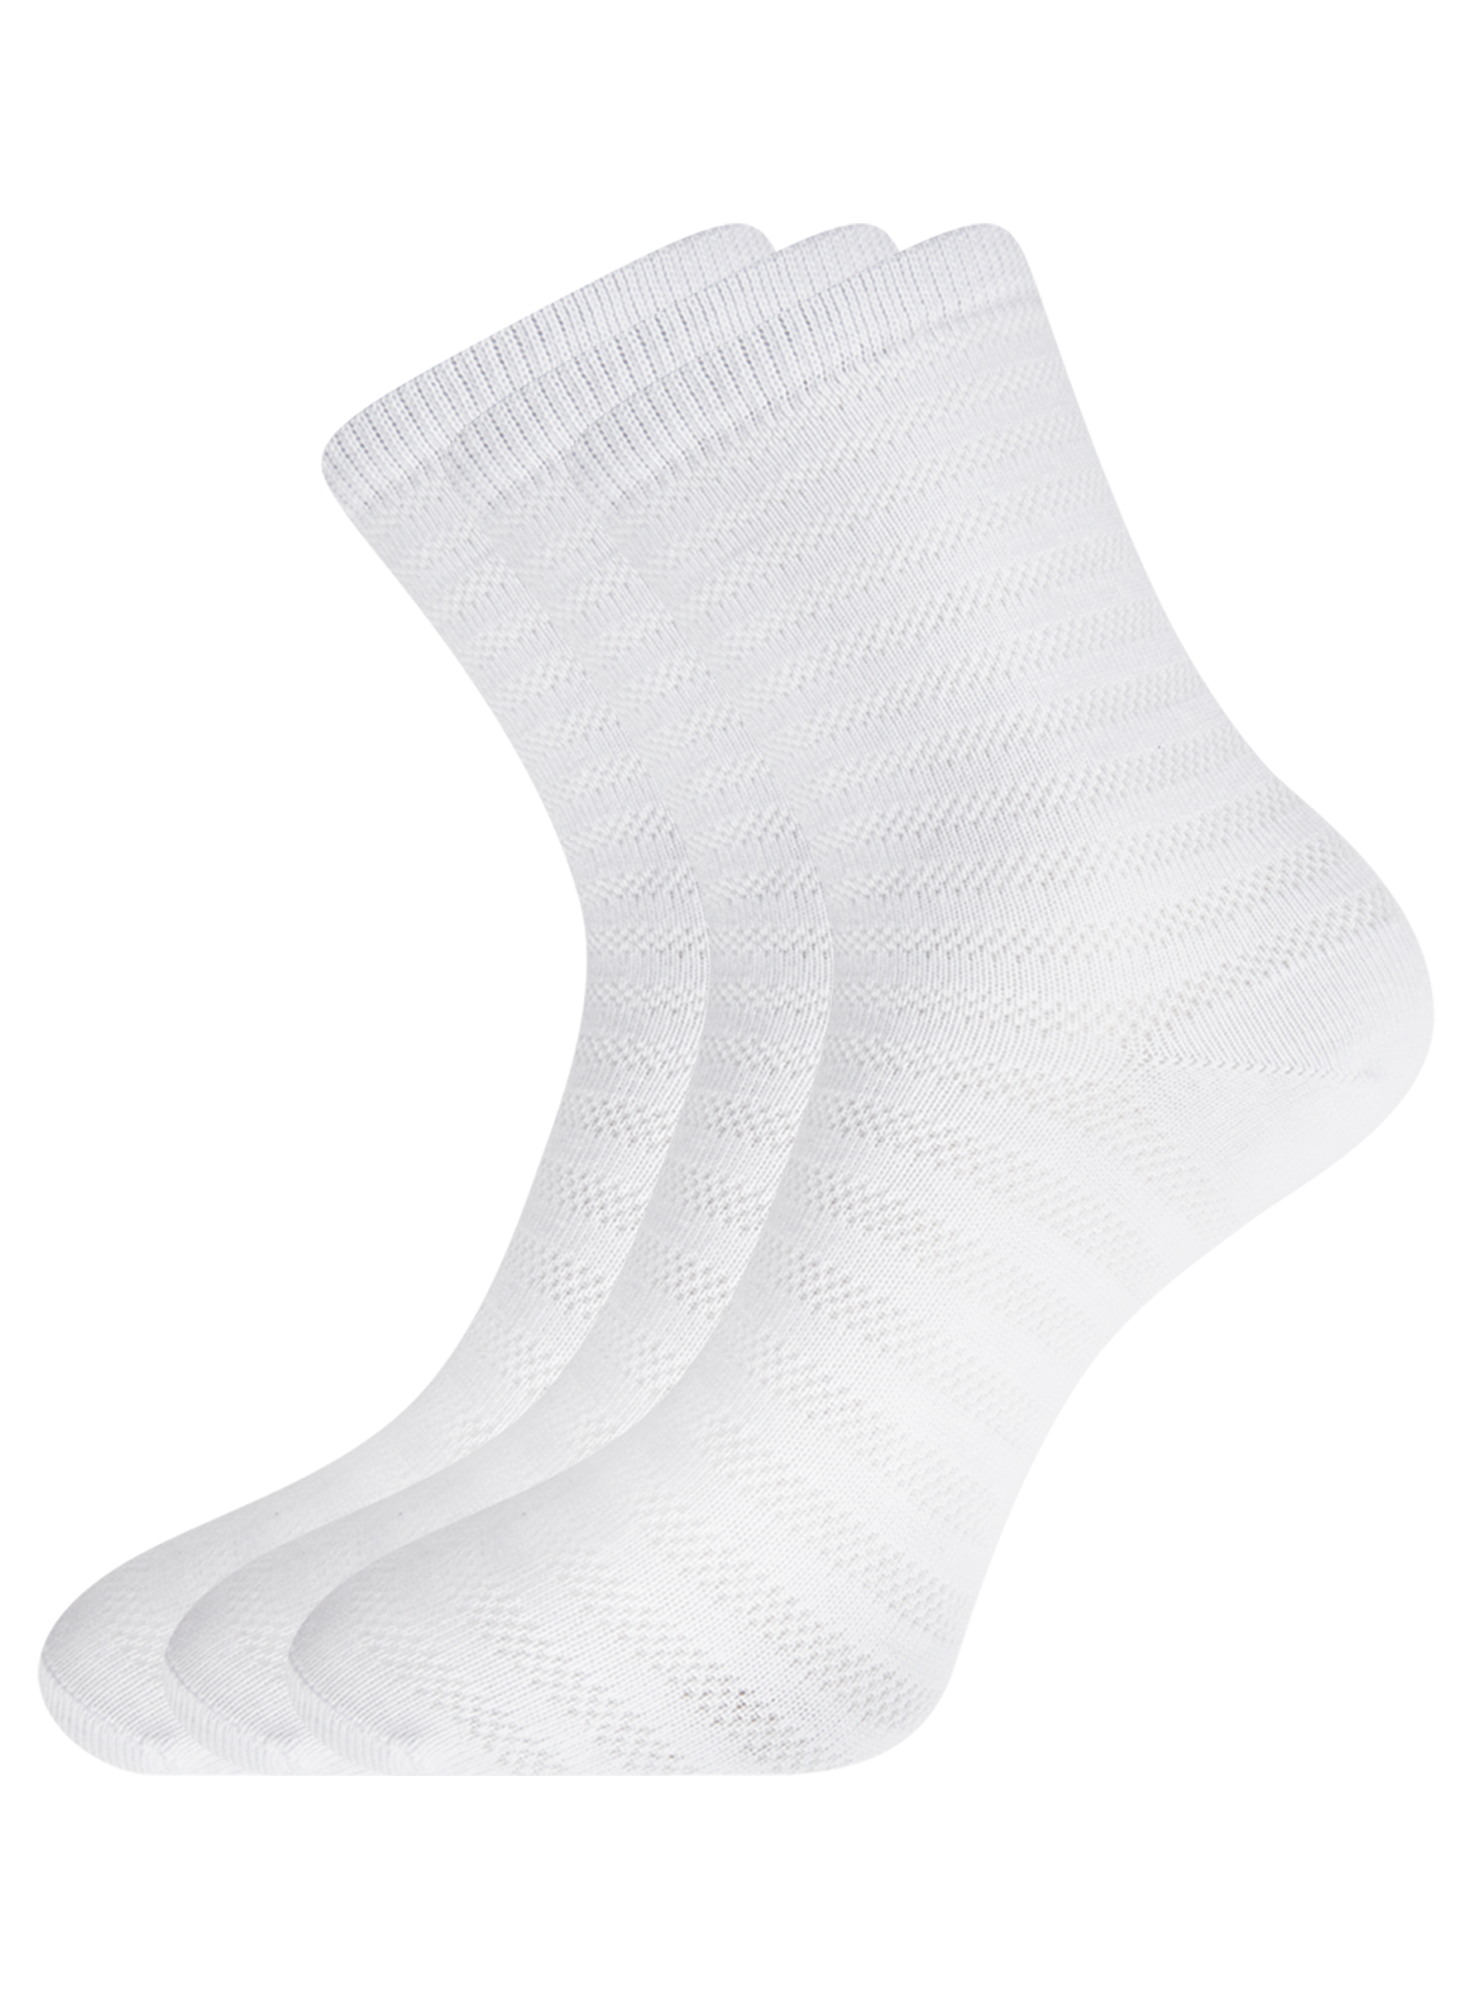 Комплект носков женских oodji 57102813T3 белых 35-37